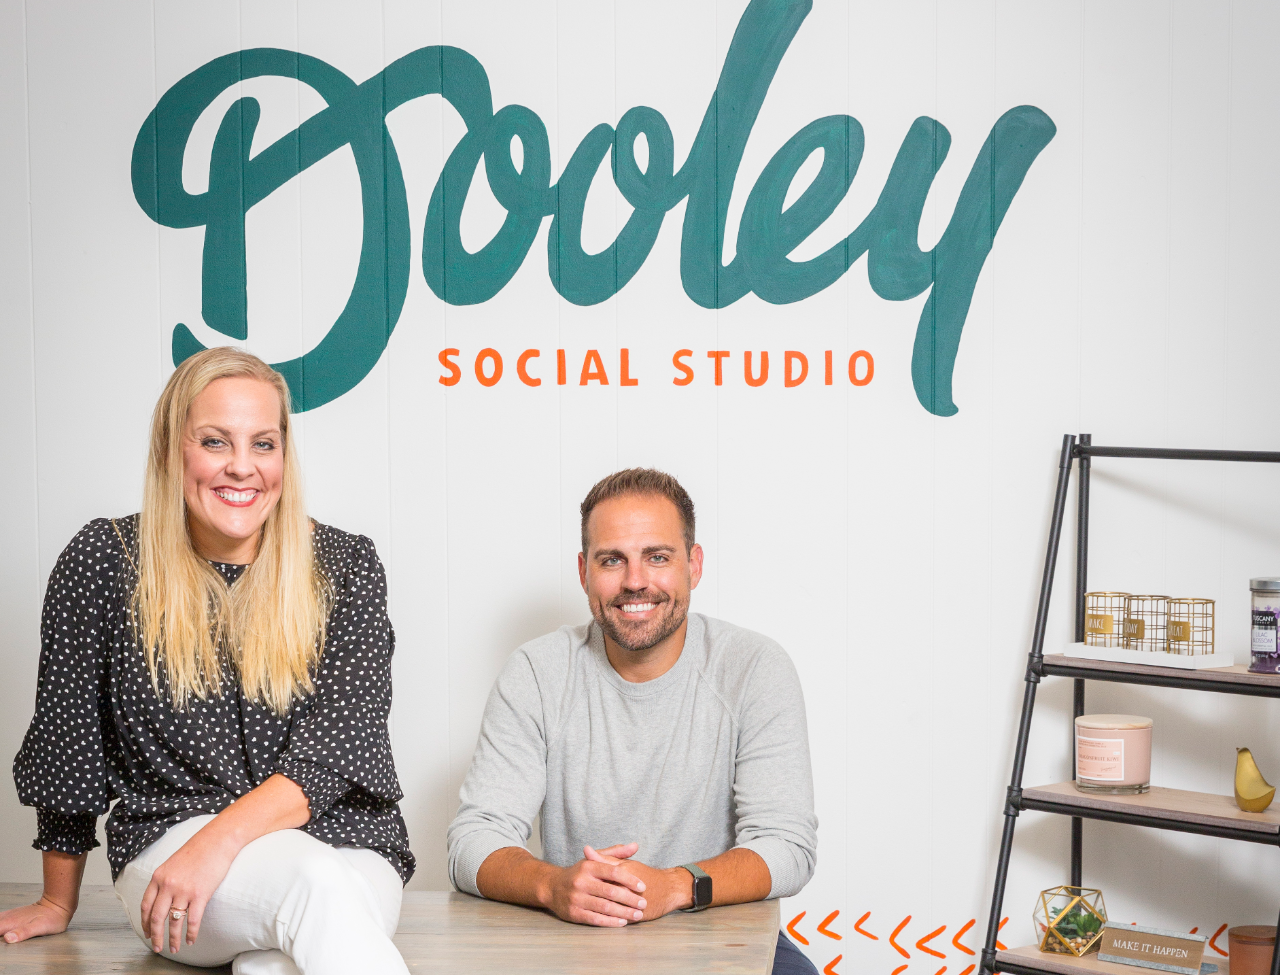 Matthew Dooley (Partner & CEO) and Keri Stephens (Partner & COO) of Dooley Social Studio